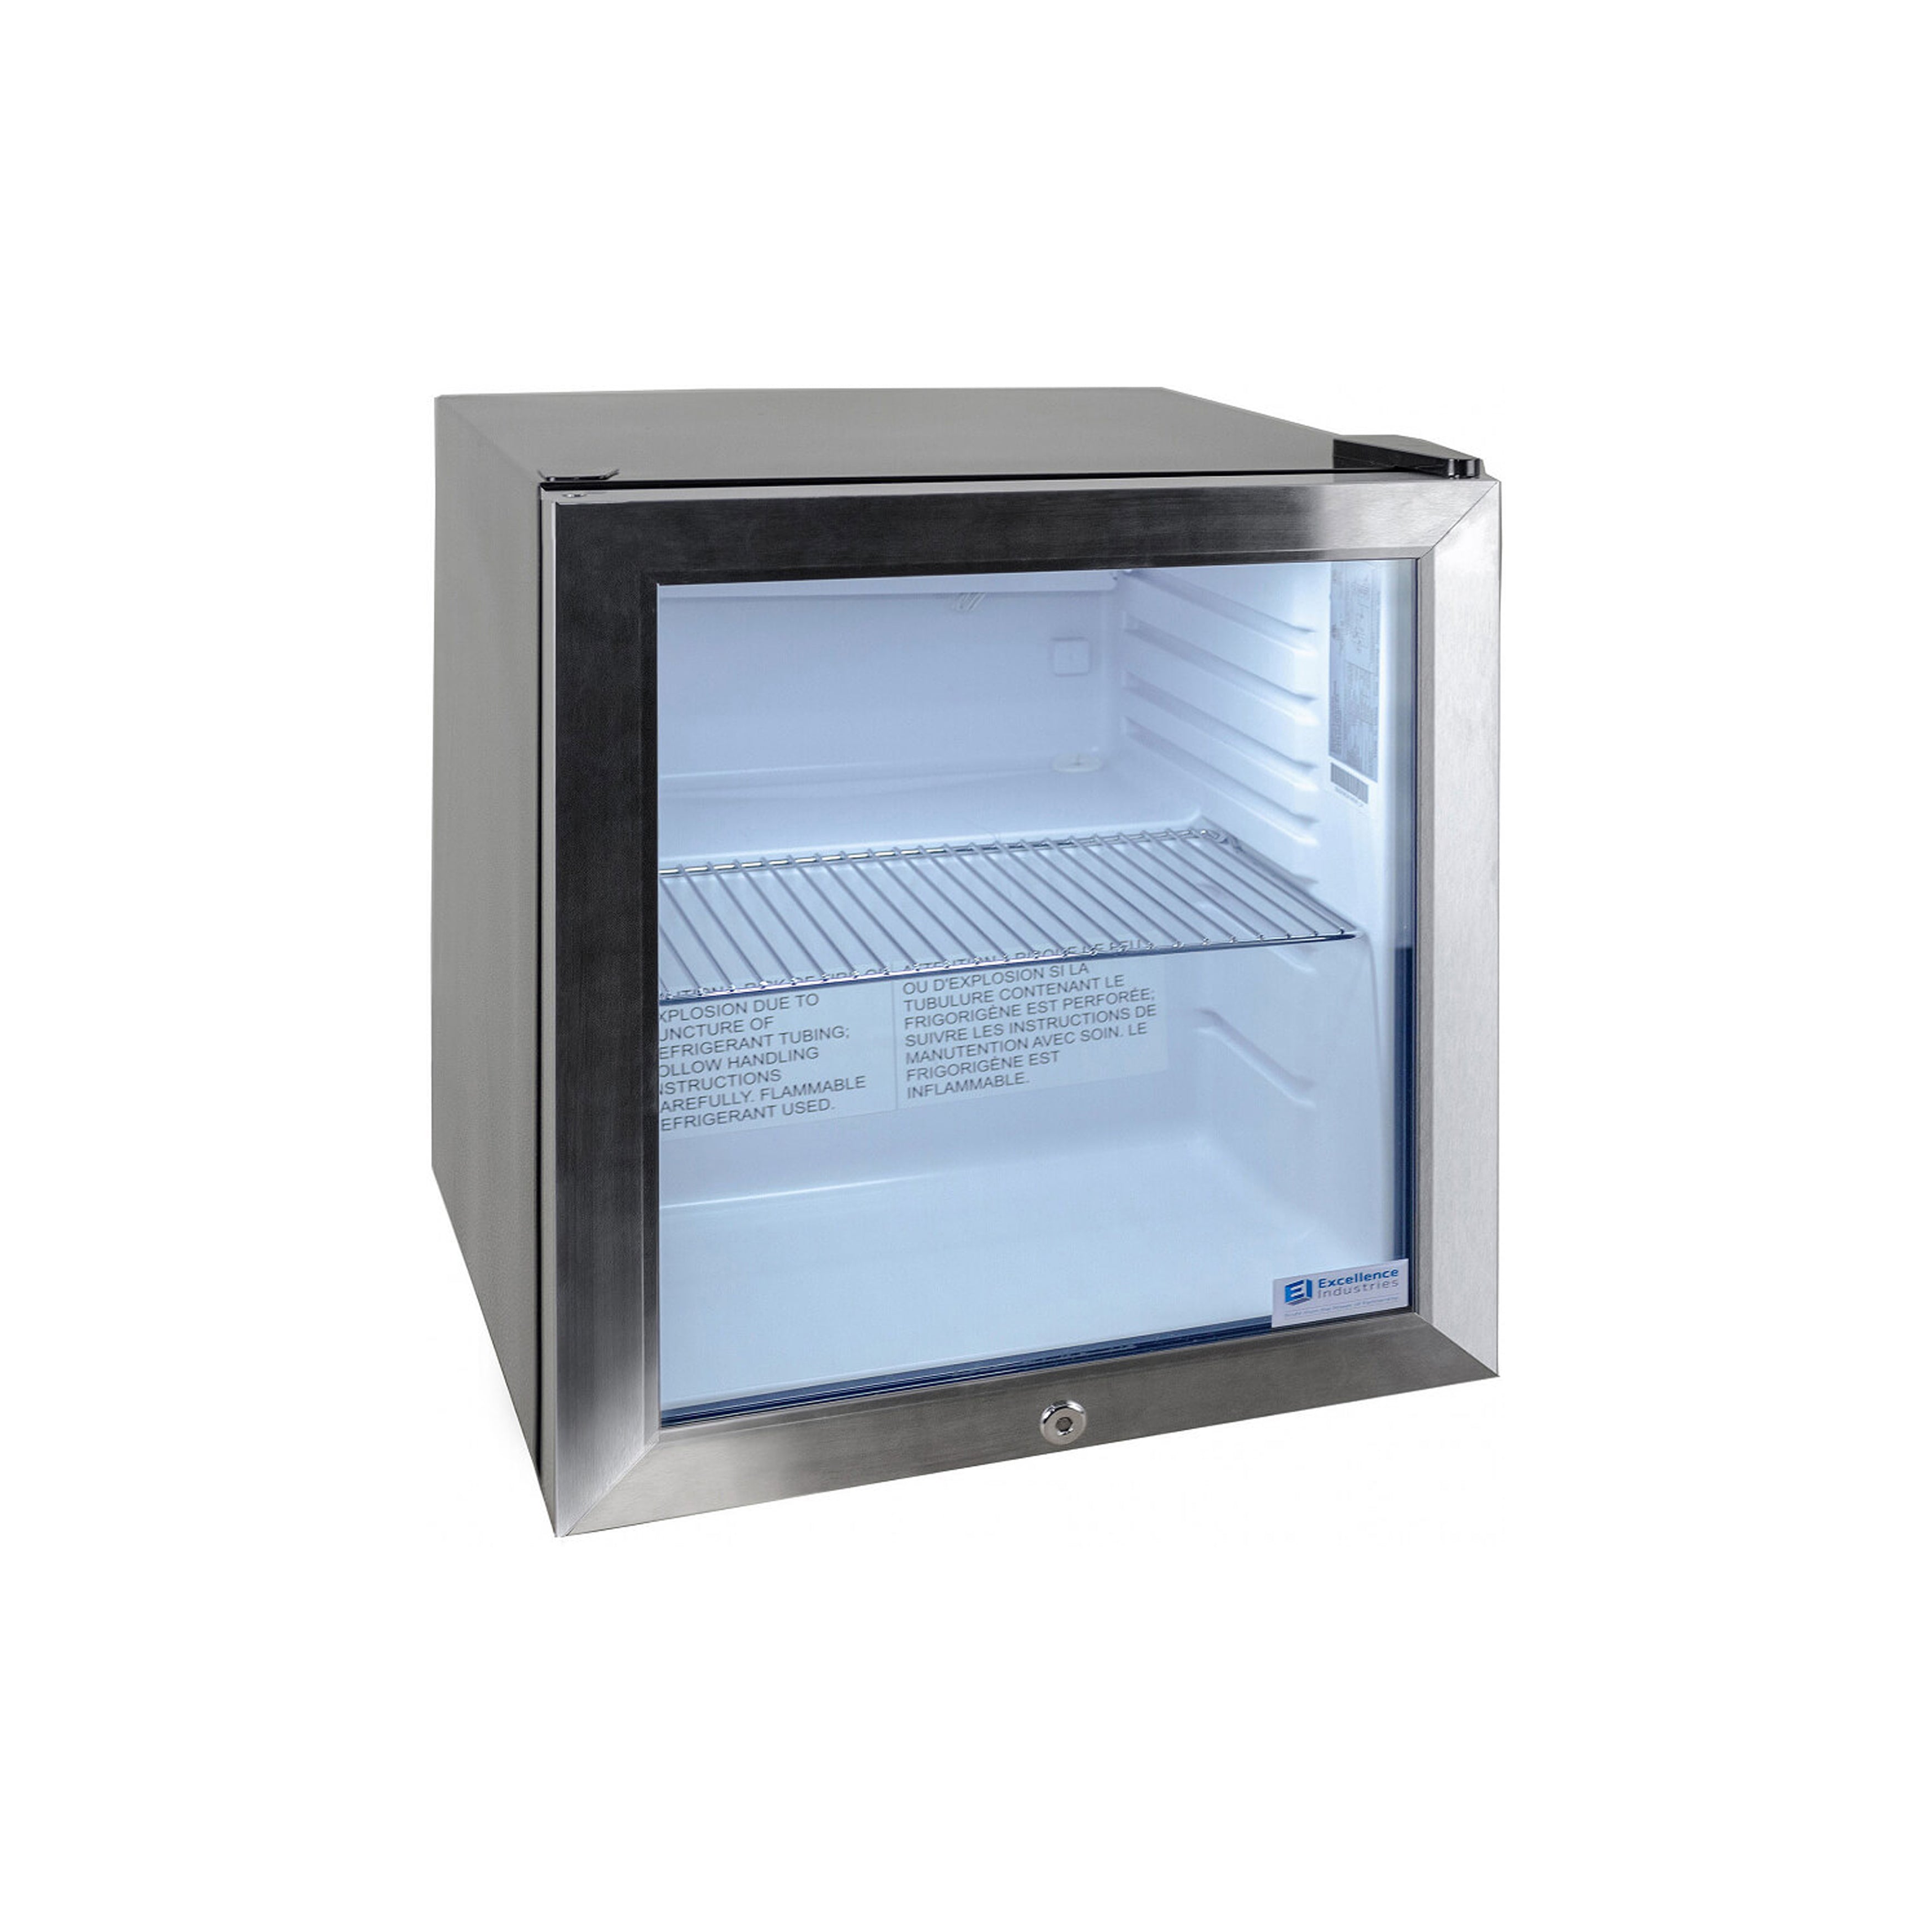 Excellence Industries - EMM-2HC, 17" Commercial 1 Swing Glass Door Countertop Refrigerated Merchandiser 1.6 cu.ft.